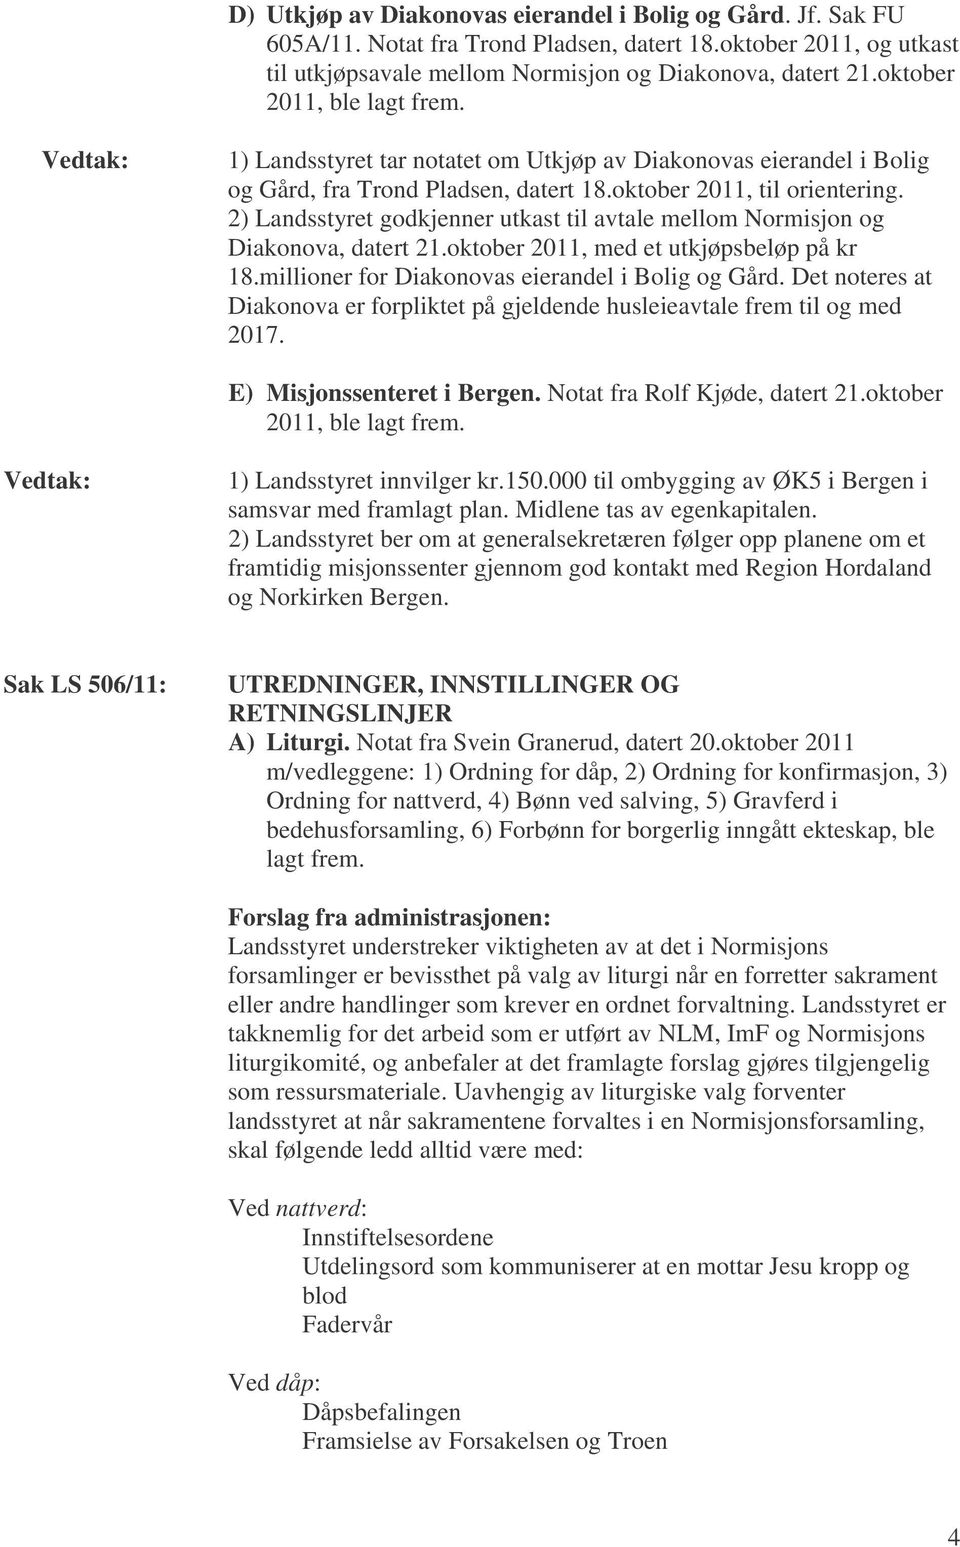 2) Landsstyret godkjenner utkast til avtale mellom Normisjon og Diakonova, datert 21.oktober 2011, med et utkjøpsbeløp på kr 18.millioner for Diakonovas eierandel i Bolig og Gård.